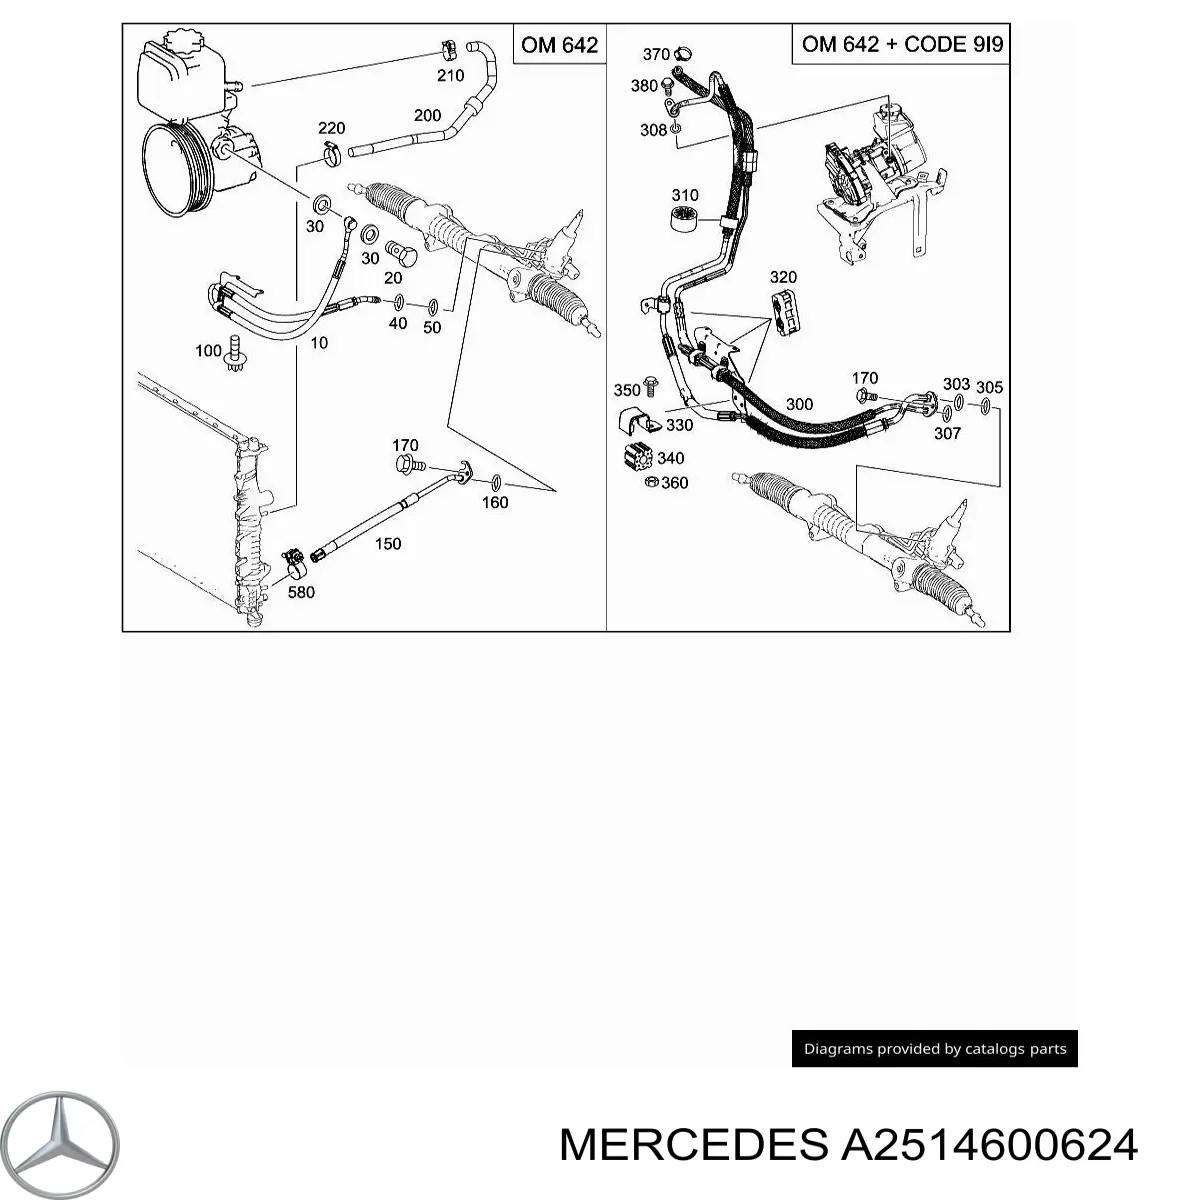 Mangueira da Direção hidrâulica assistida de pressão alta desde a bomba até a régua (do mecanismo) para Mercedes ML/GLE (W164)